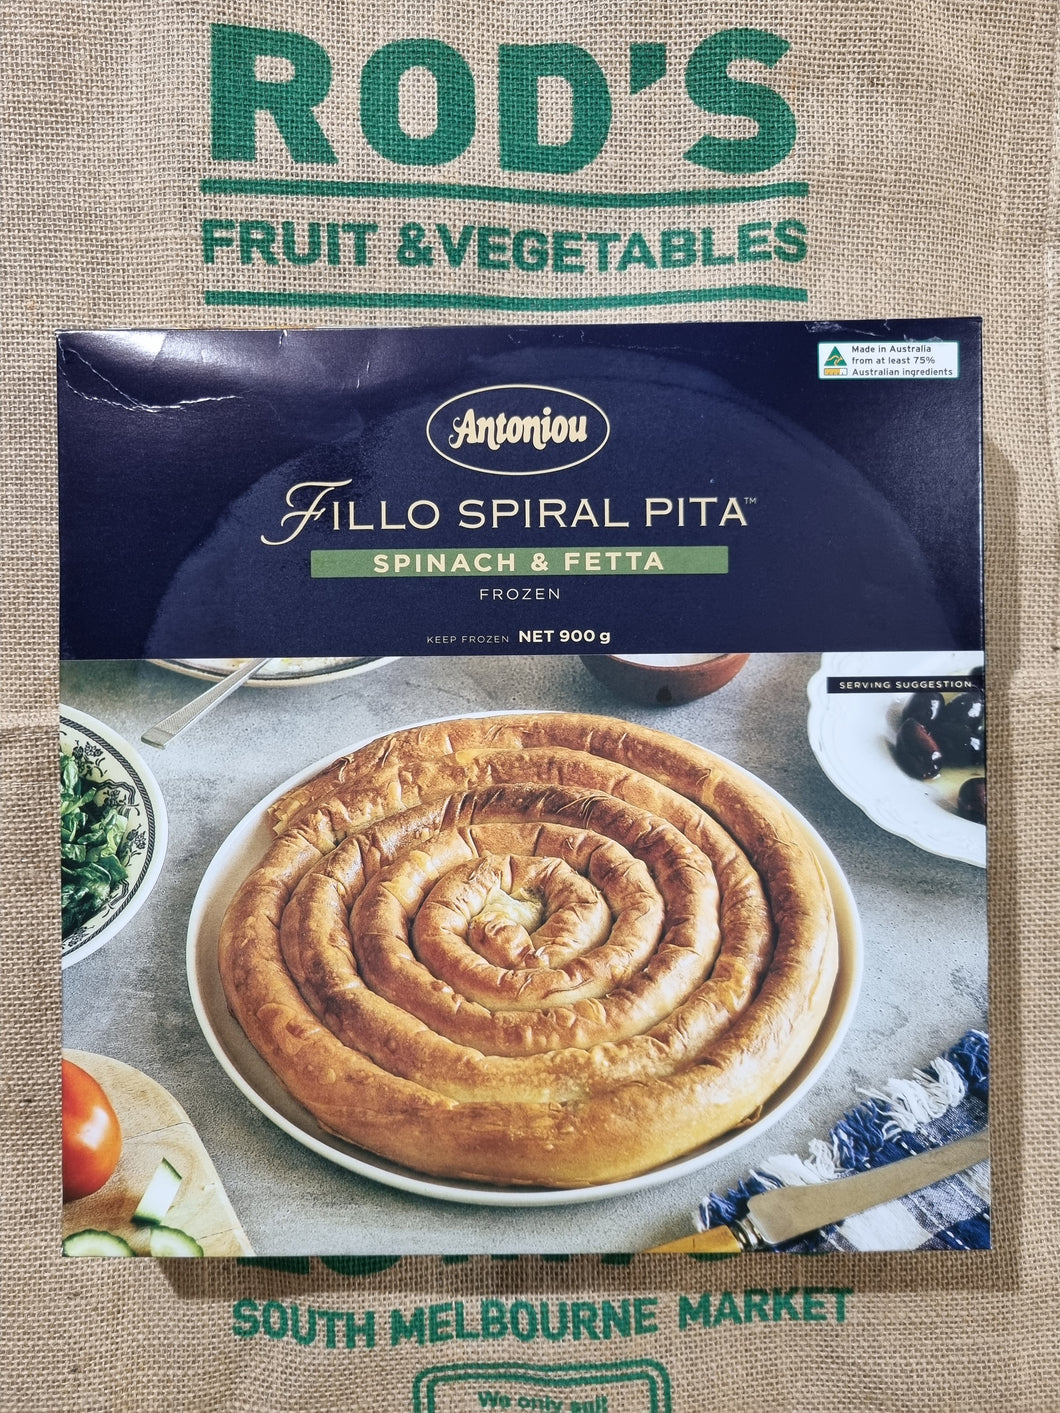 Spinach- Fetta - Filo Spiral Pita 900g (frozen) arrives thawed